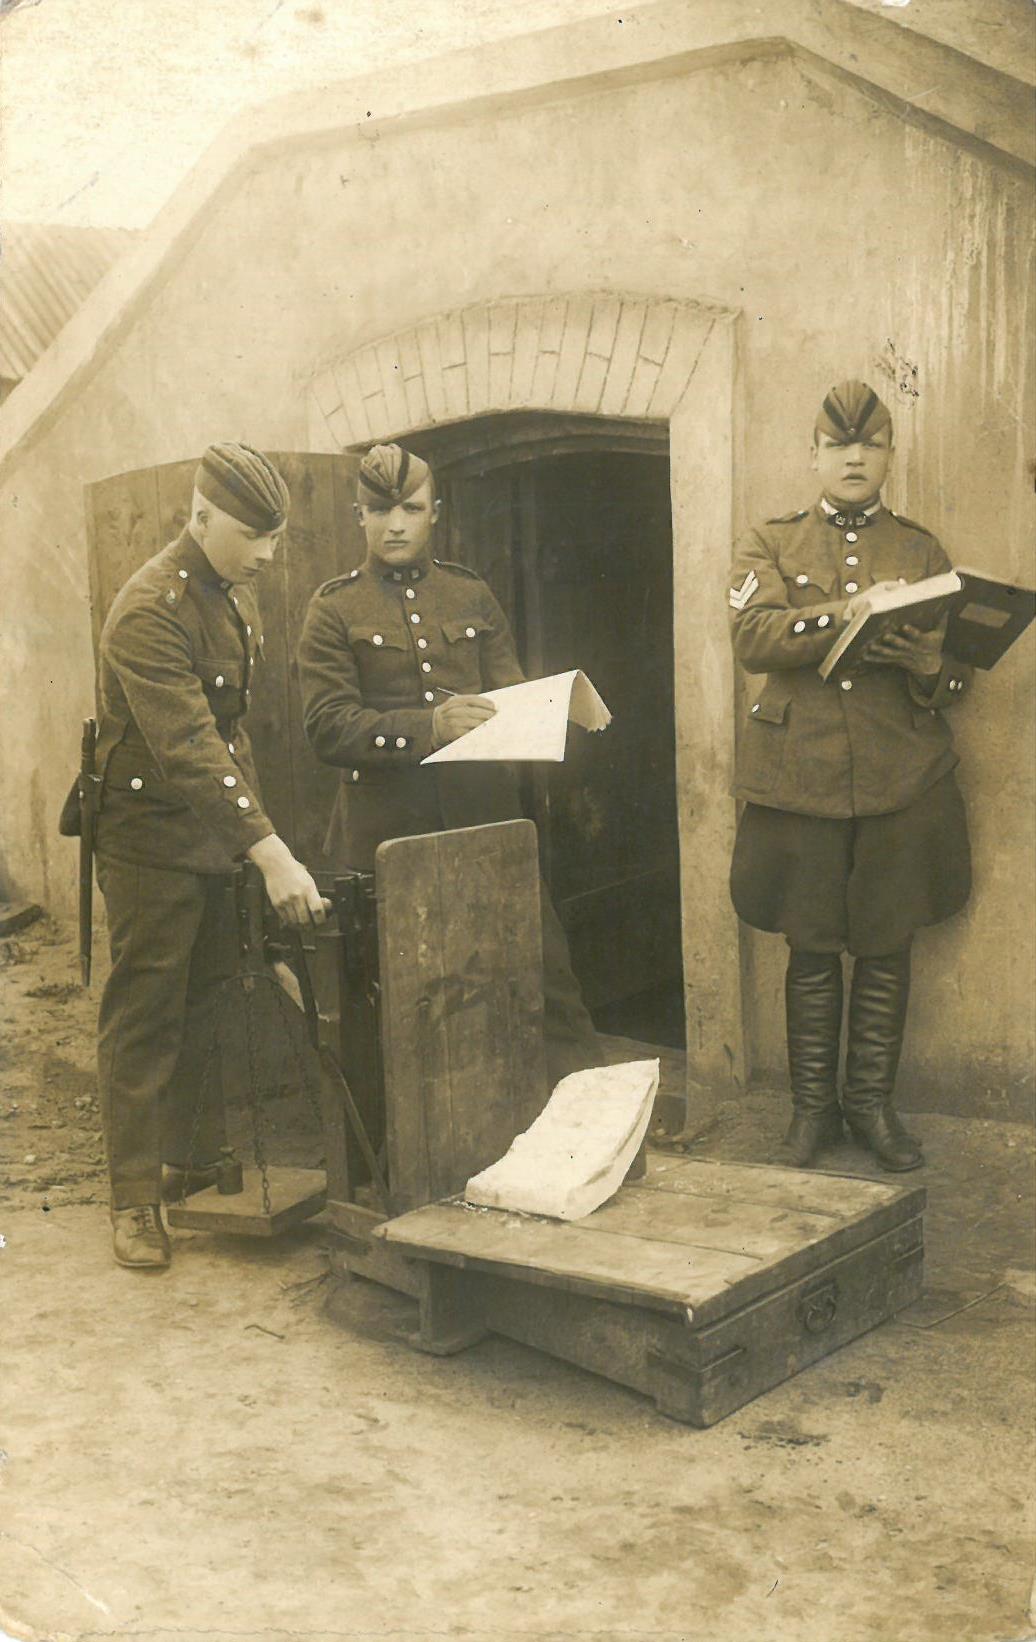 Lietuvos kariuomenės kariai Radviliškyje. Kazys Balčiūnas (pirmas iš kairės) sveria lašinius 